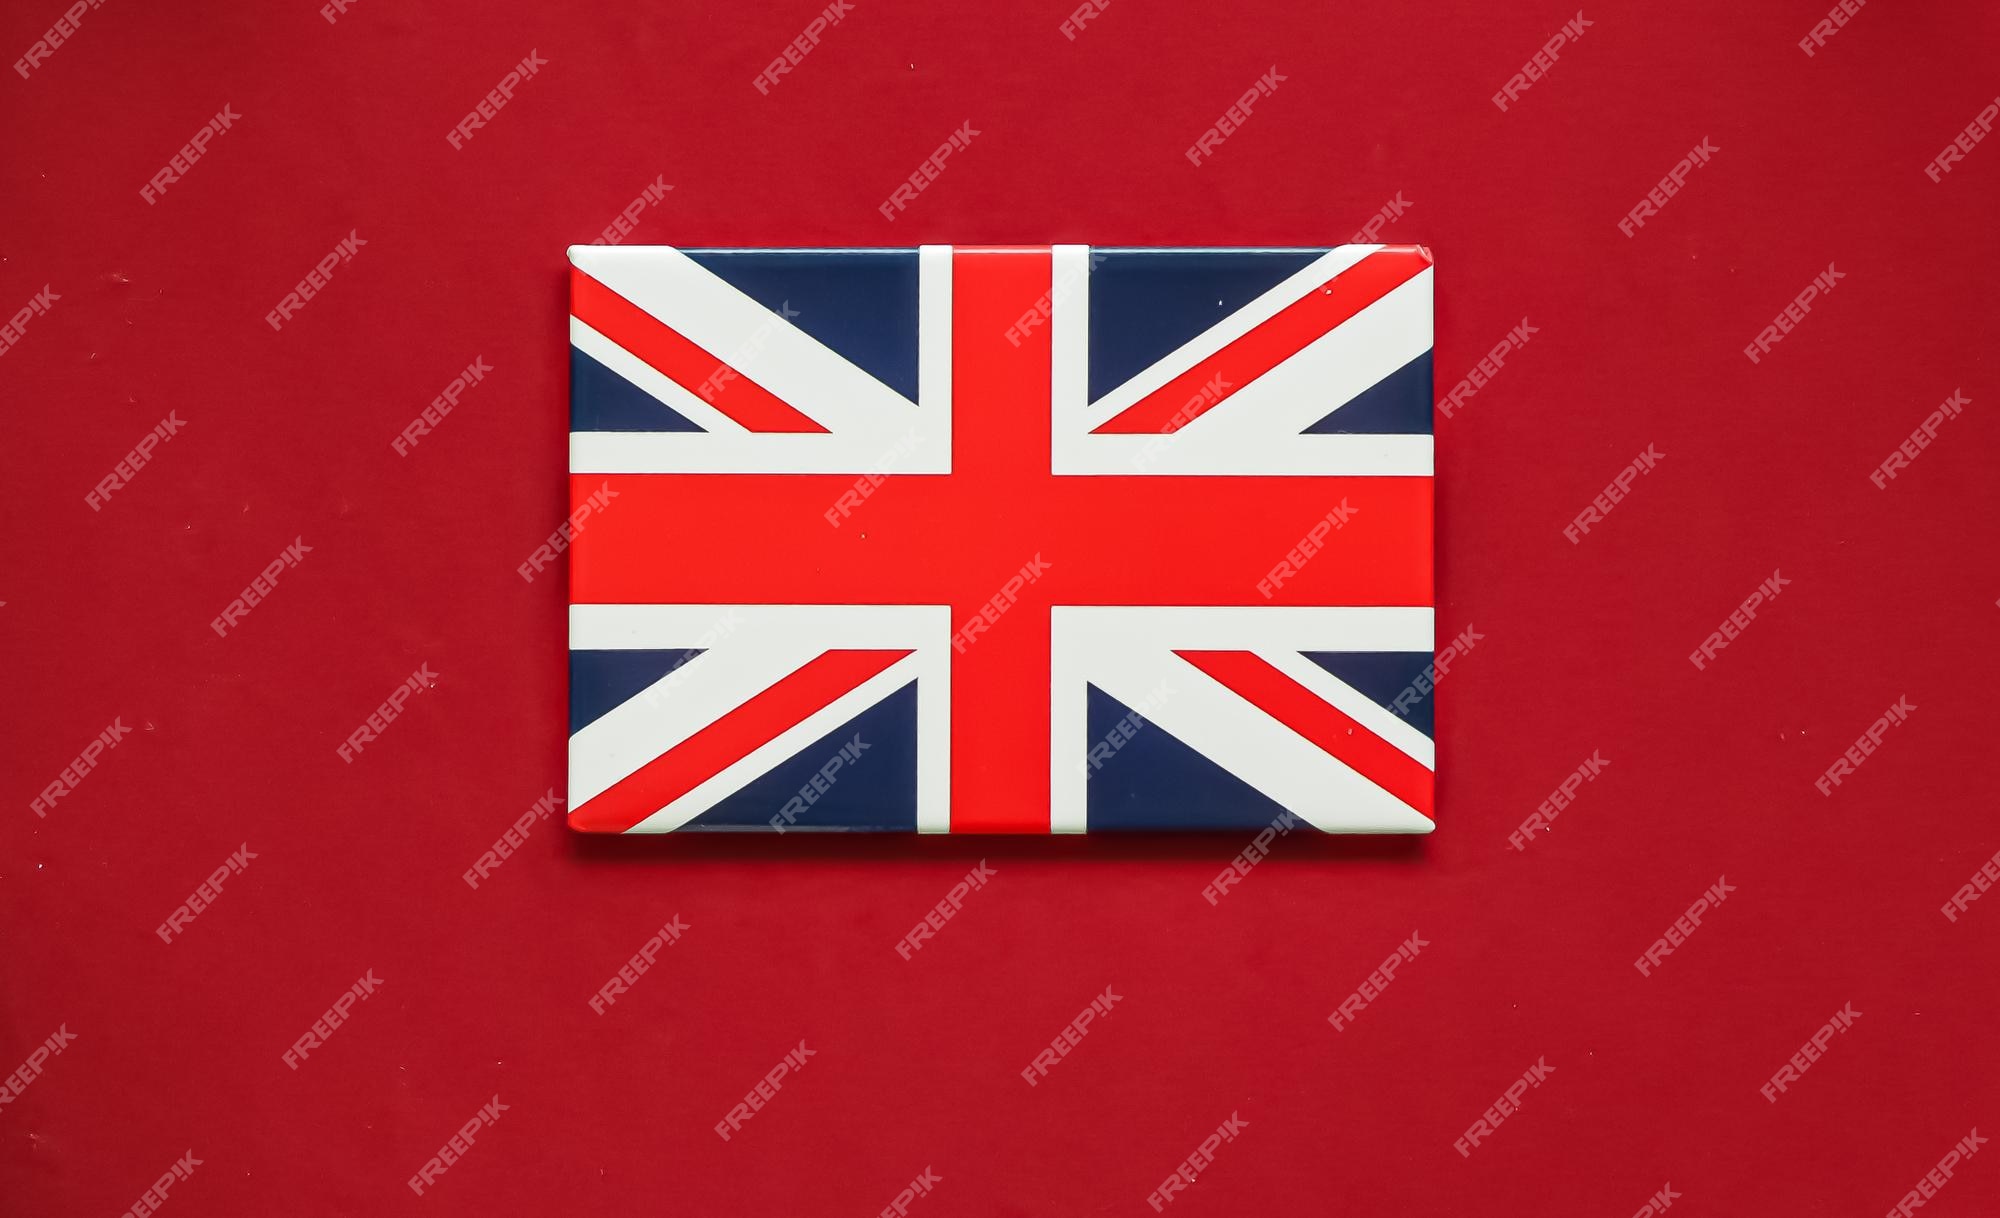 Hình ảnh lá cờ Vương quốc Anh đầy uy nghiêm và quyền lực sẽ khiến bạn cảm thấy rực rỡ. Với việc khắc họa nét đẹp của cờ Vương quốc Anh, hình ảnh này có thể truyền tải một thông điệp về tinh thần đoàn kết, lòng trung thành và bảo vệ cho quê hương. Hãy cùng ngắm nhìn và cảm nhận tất cả những giá trị đó trong bức tranh tuyệt đẹp này.